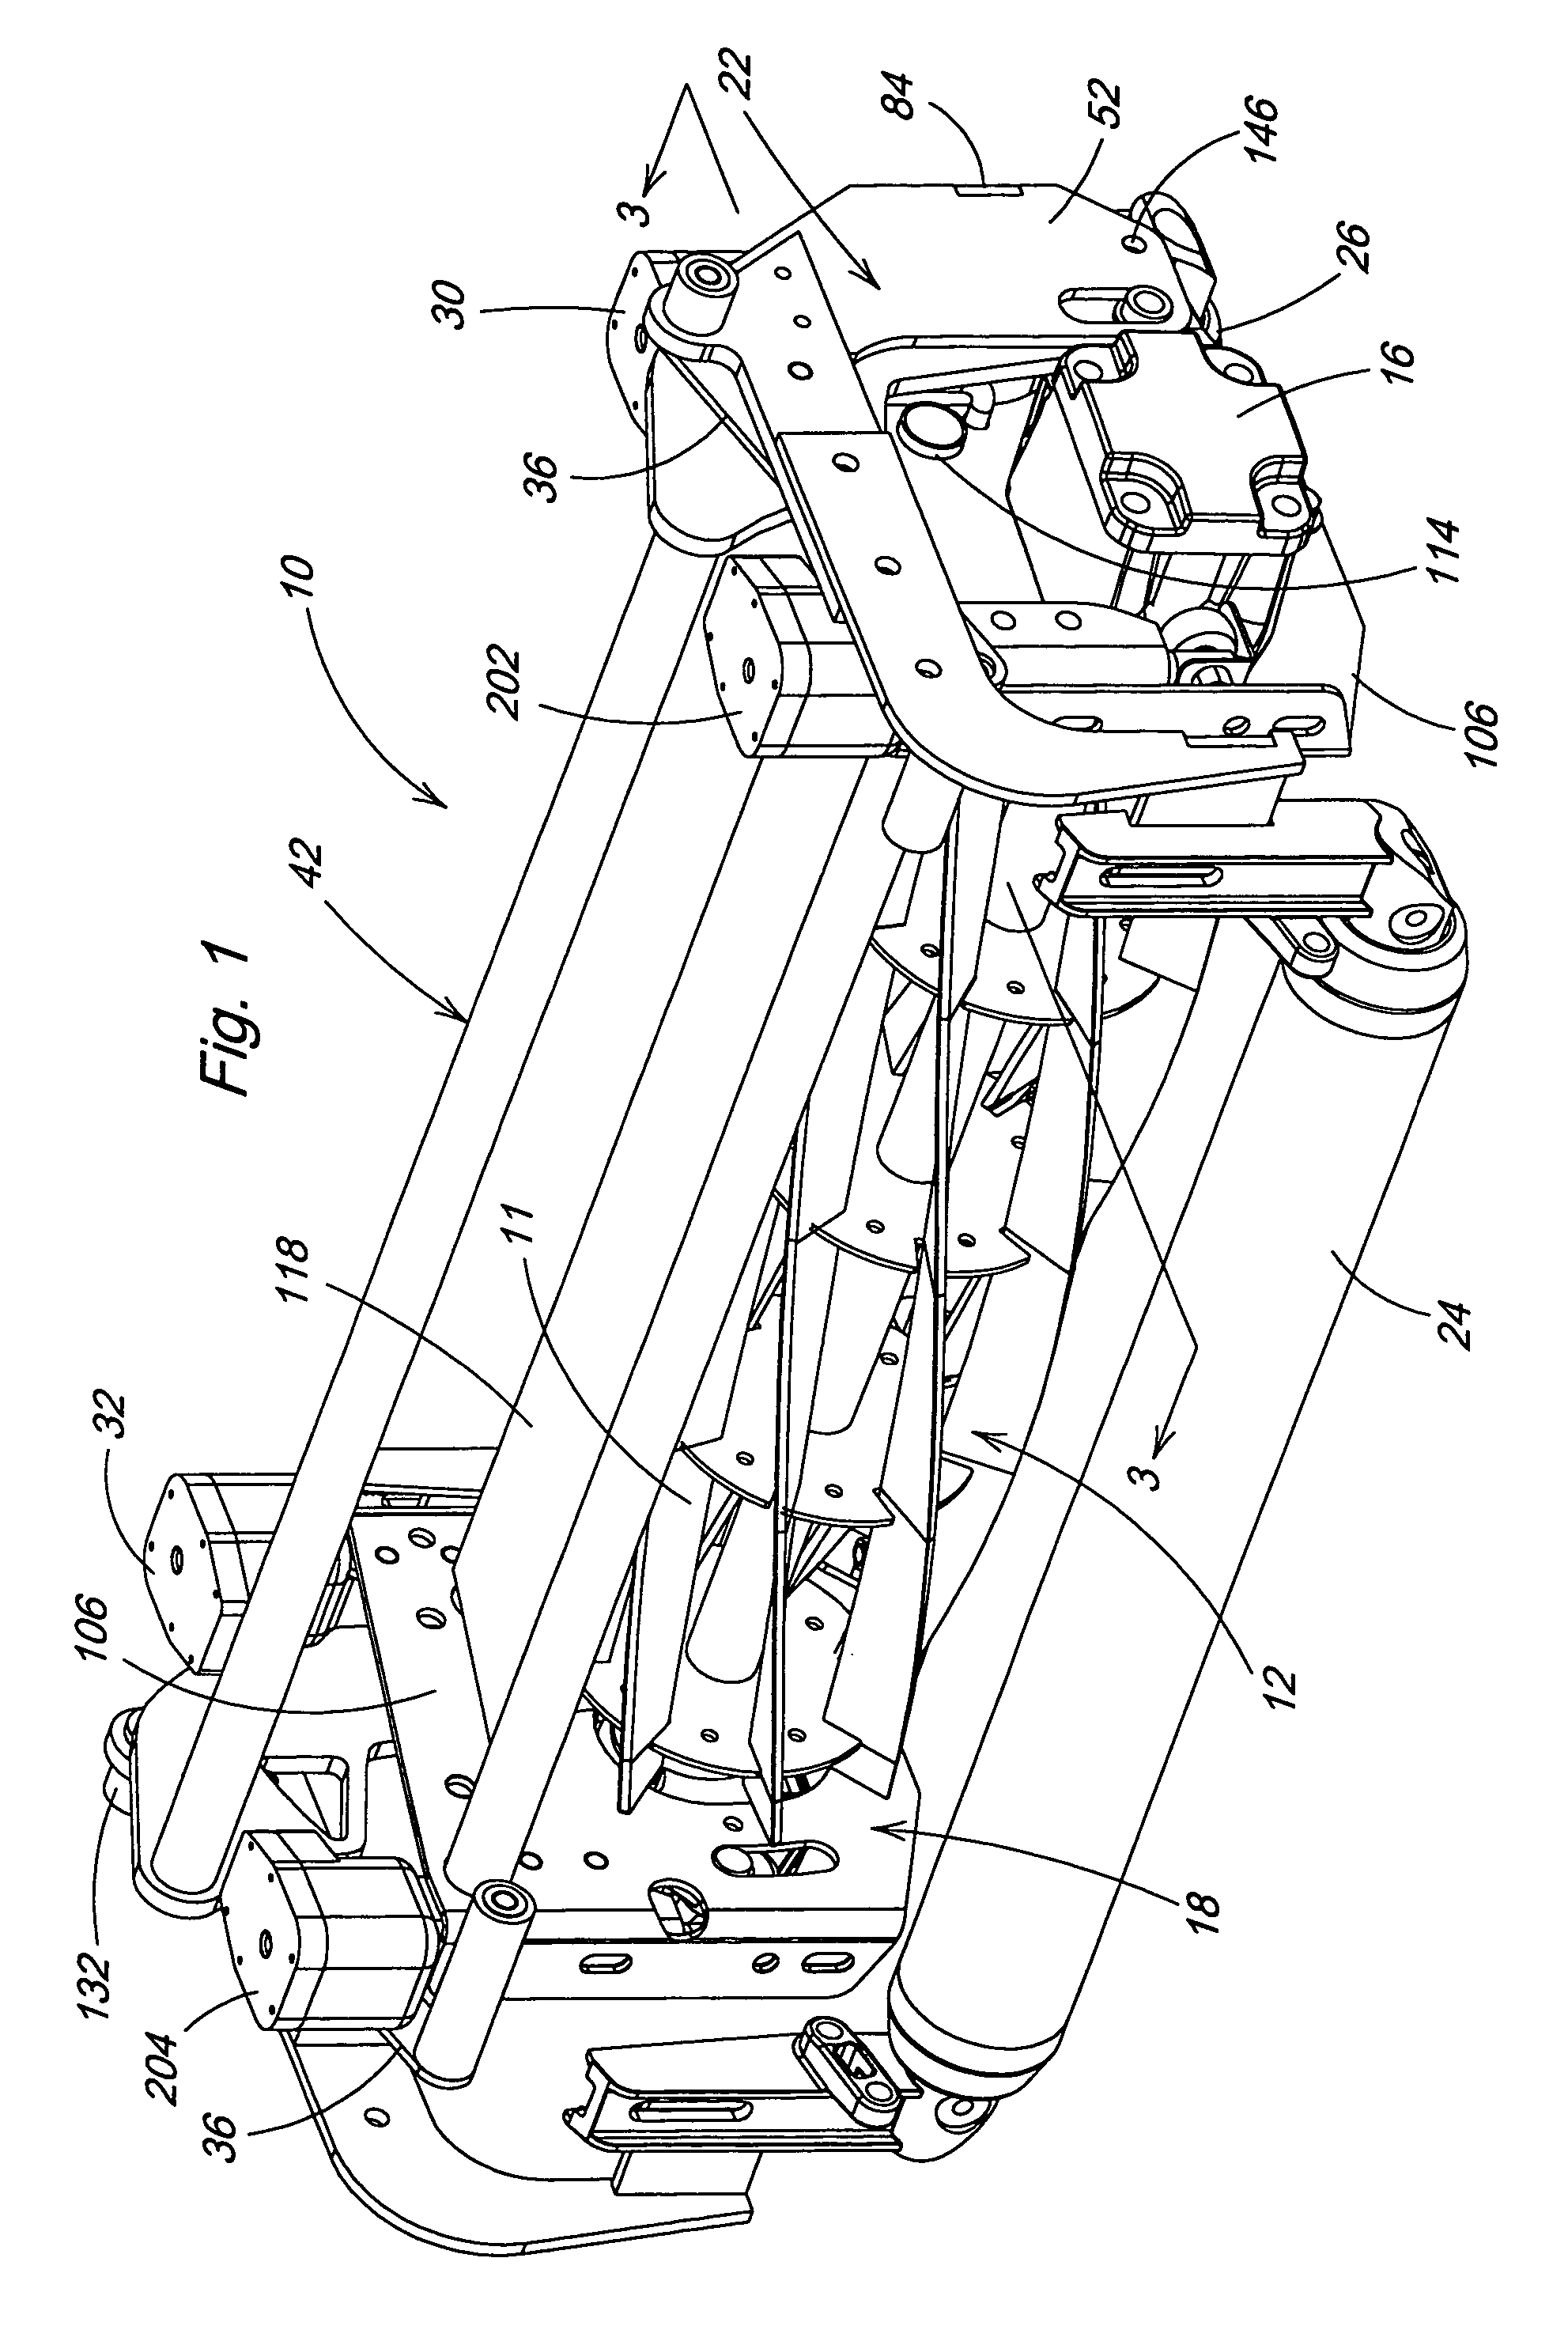 Manual or self-adjusting reel mower